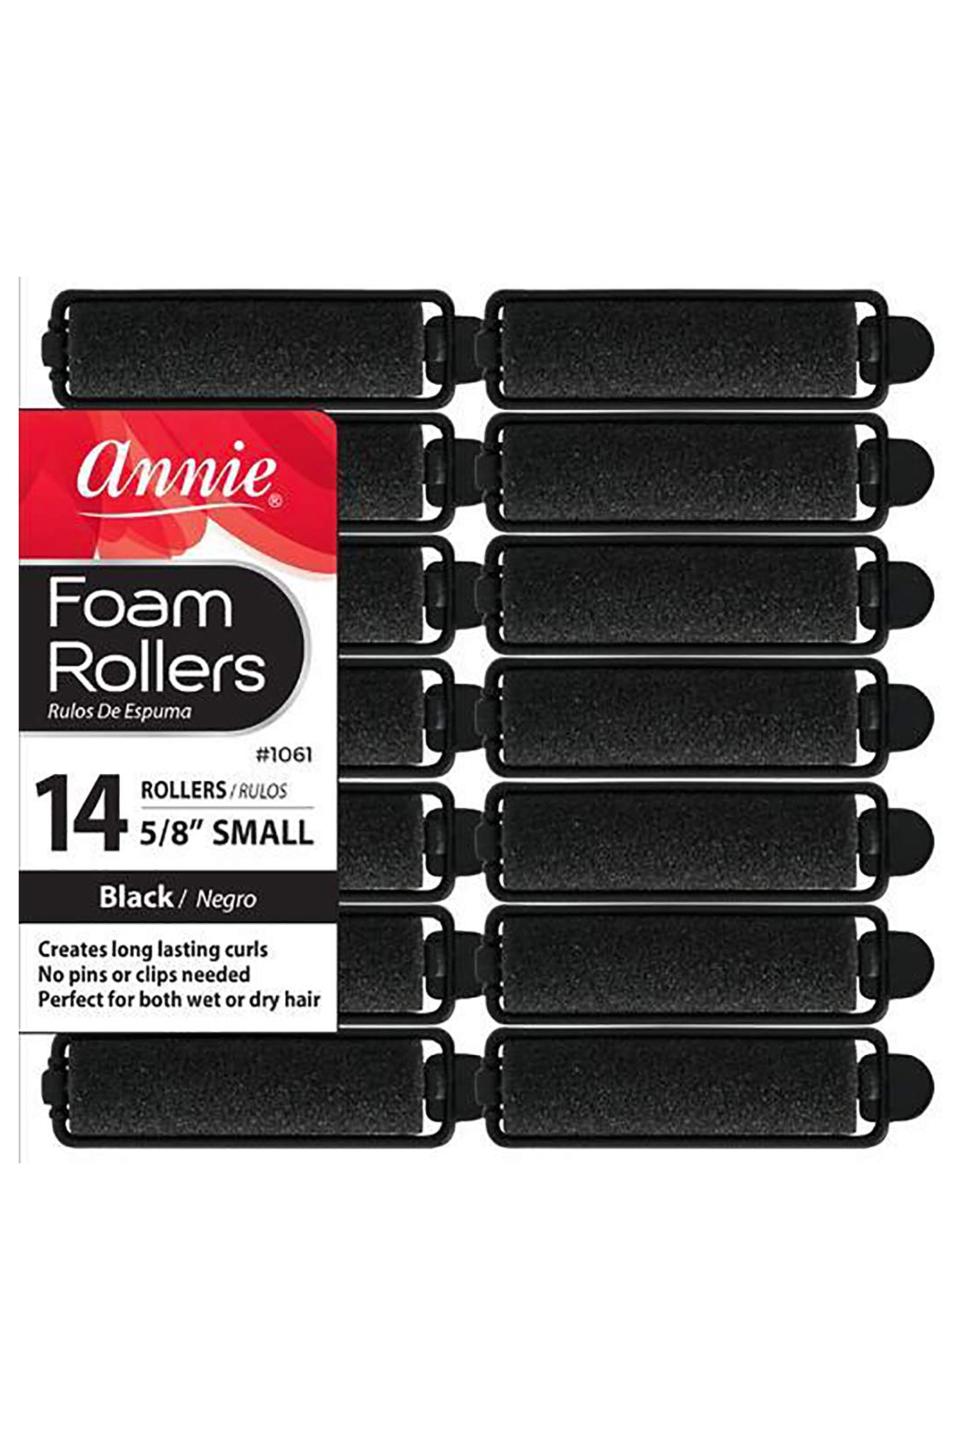 4) Foam Rollers